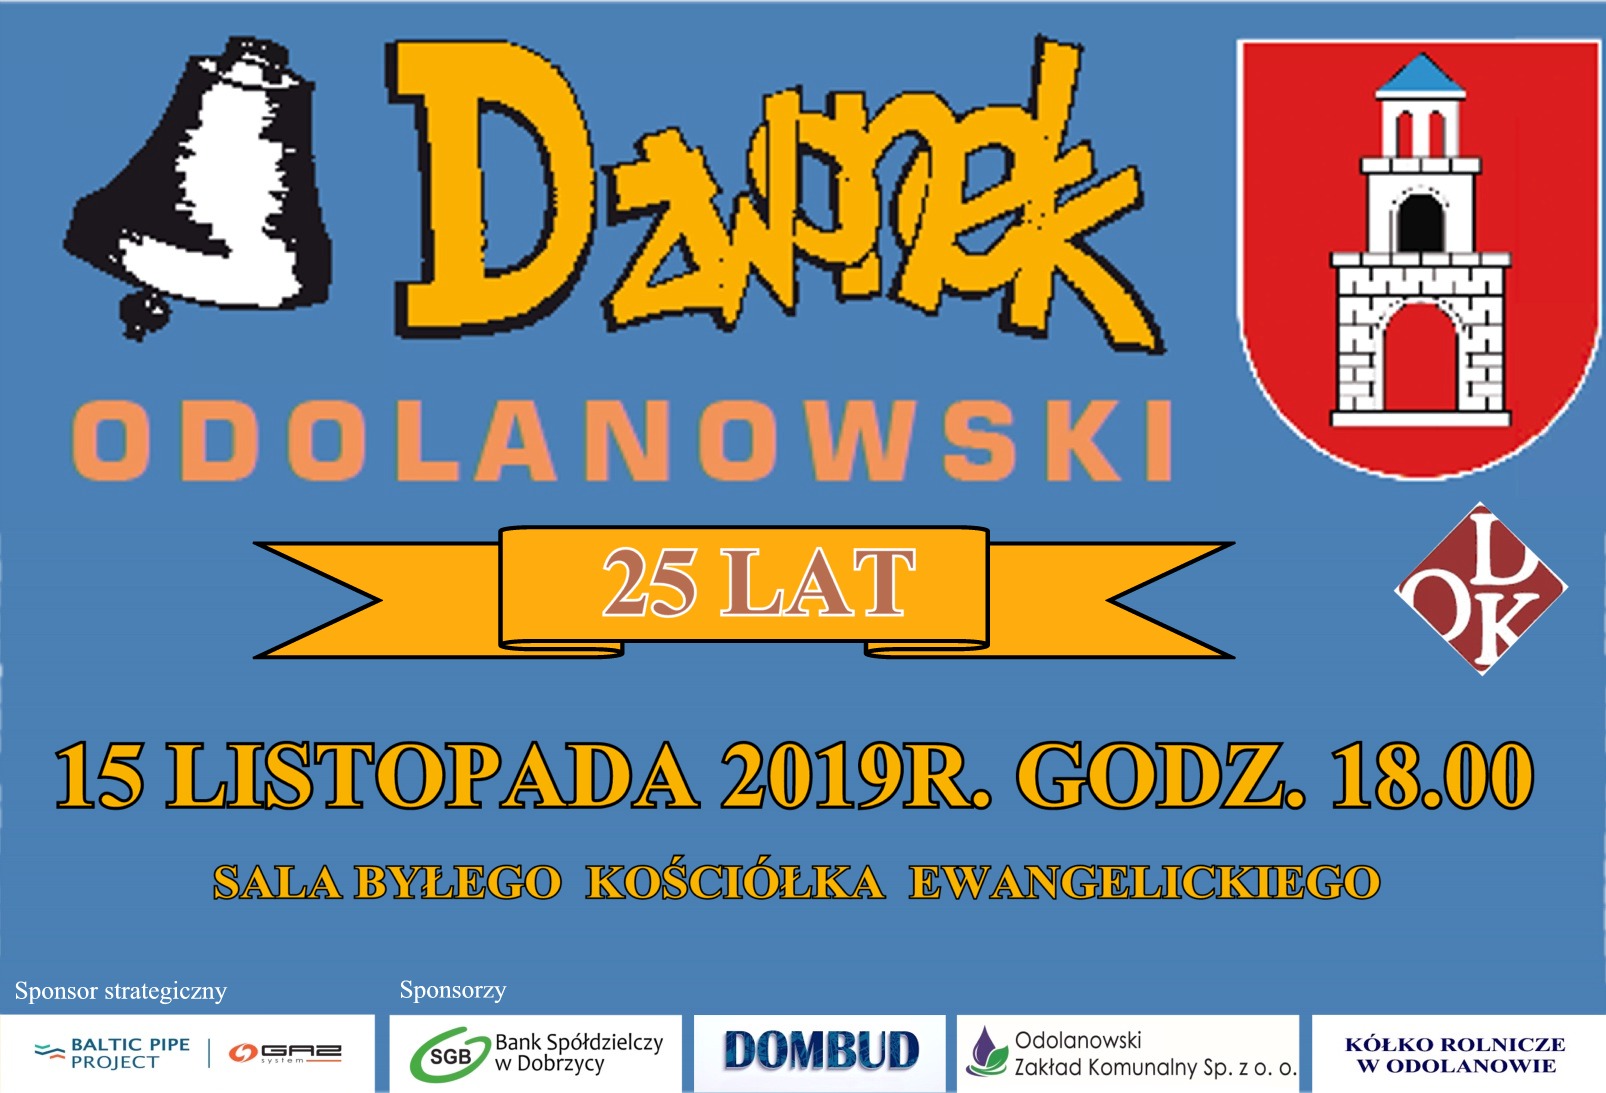 Uroczystość 25-lecia Dzwonka Odolanowskiego odbędzie się w Kościele poewangelickim